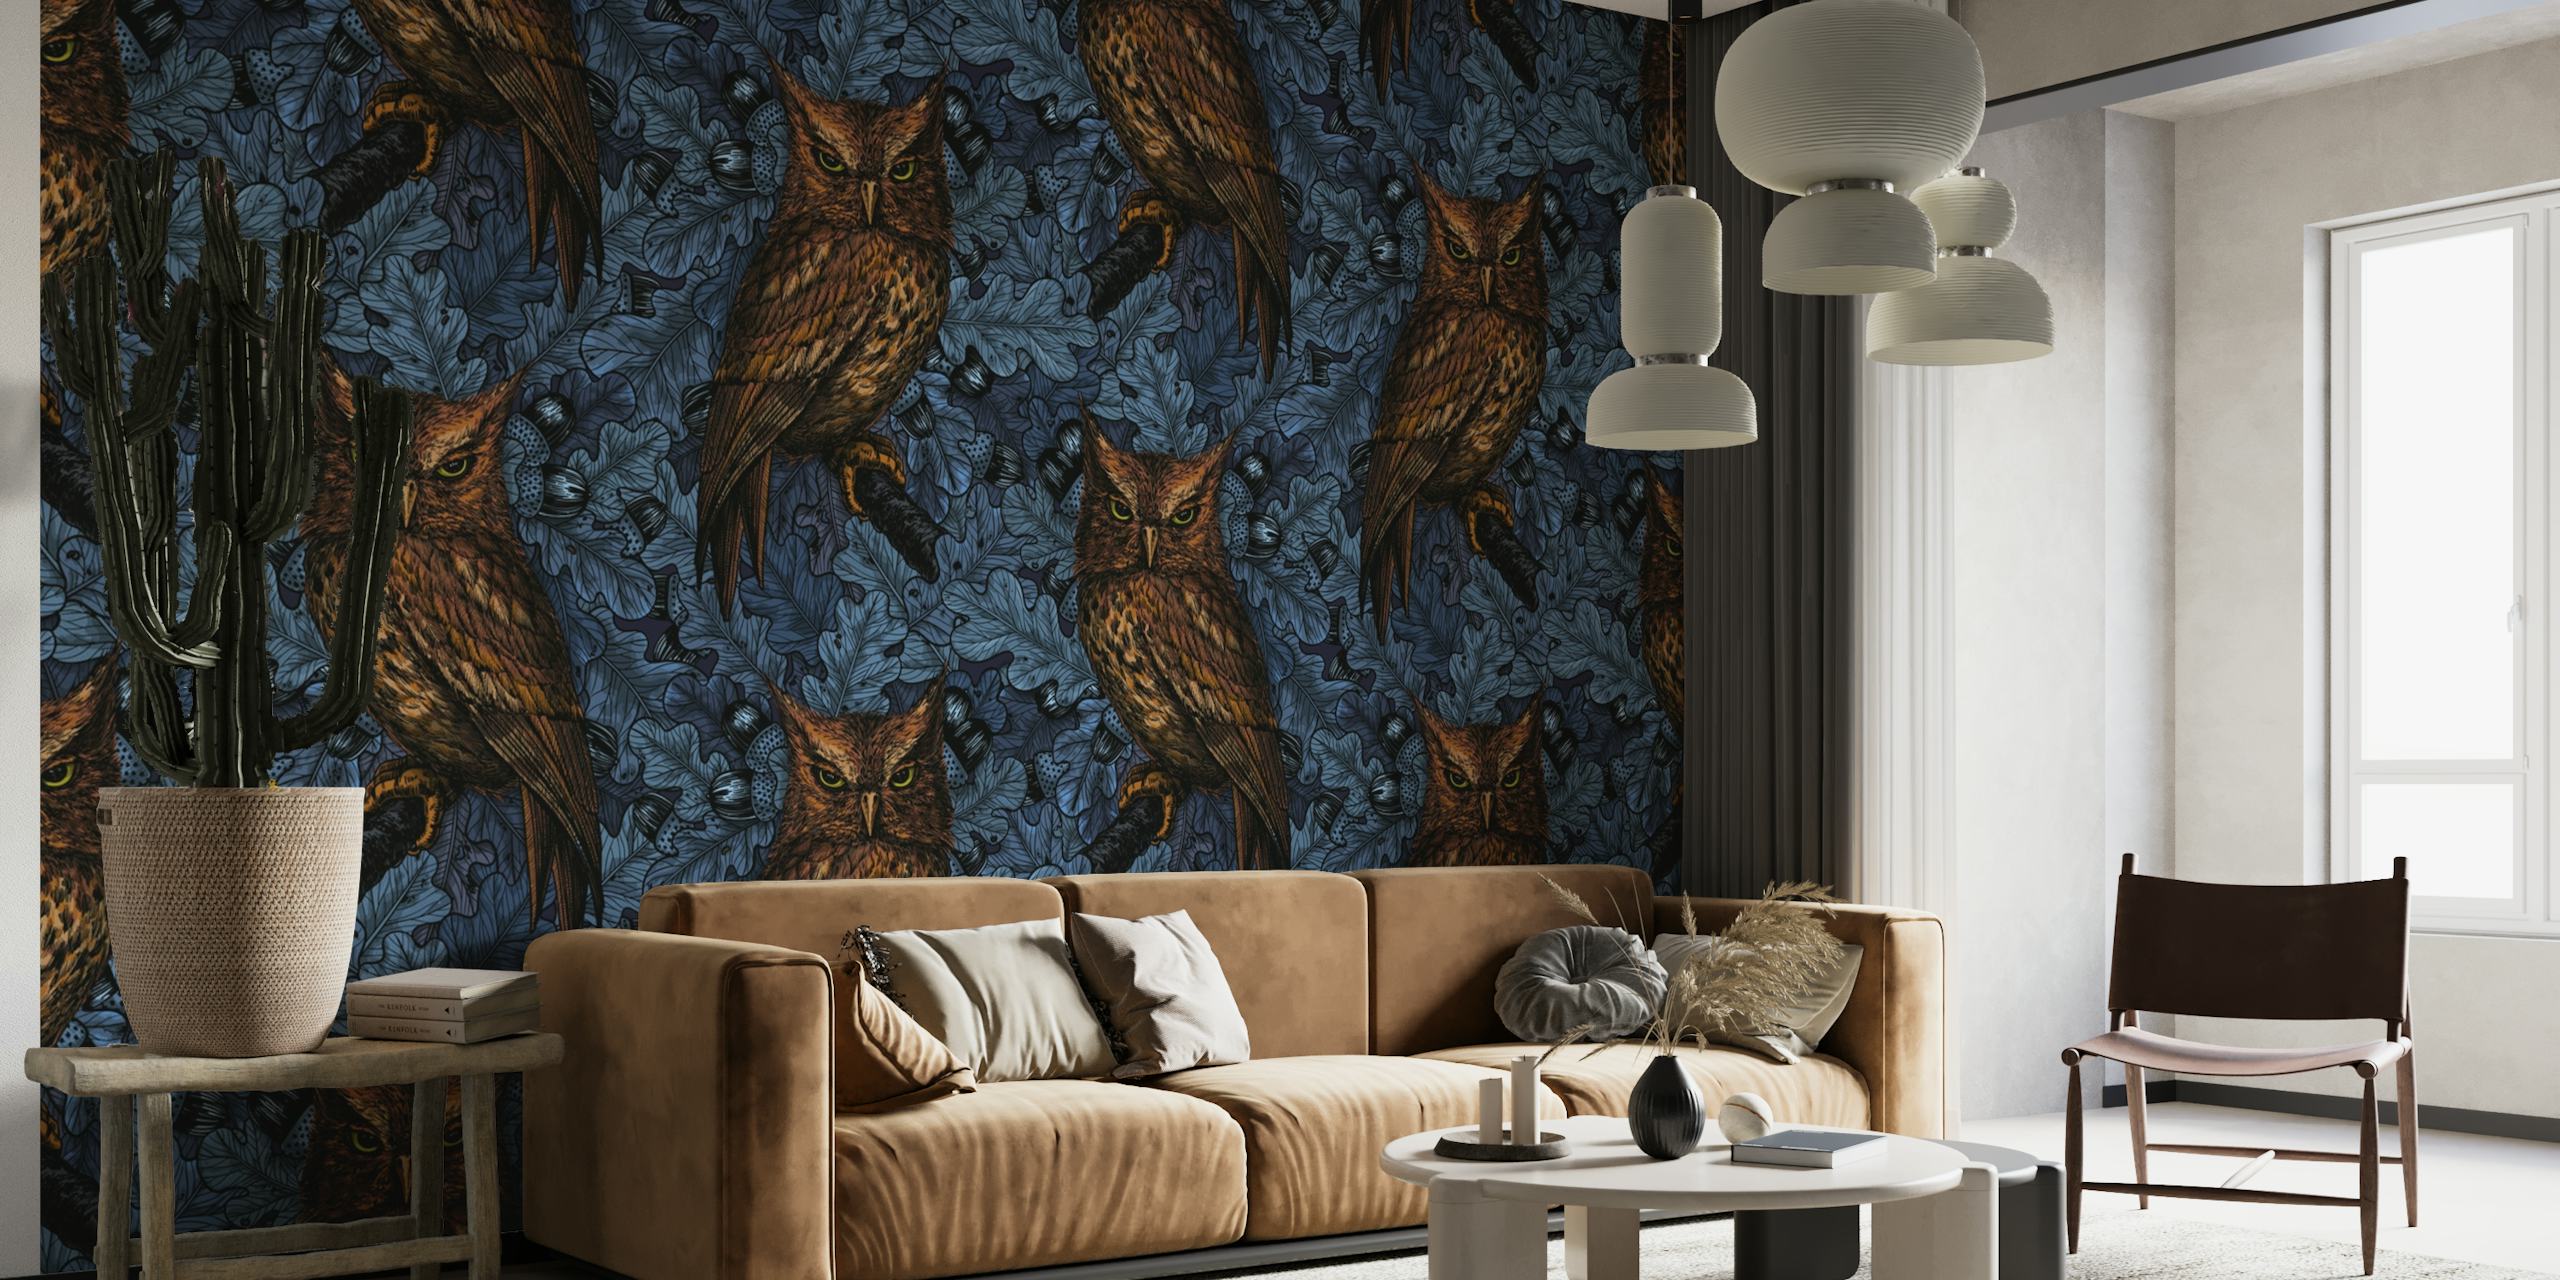 Owls in the oak tree wallpaper